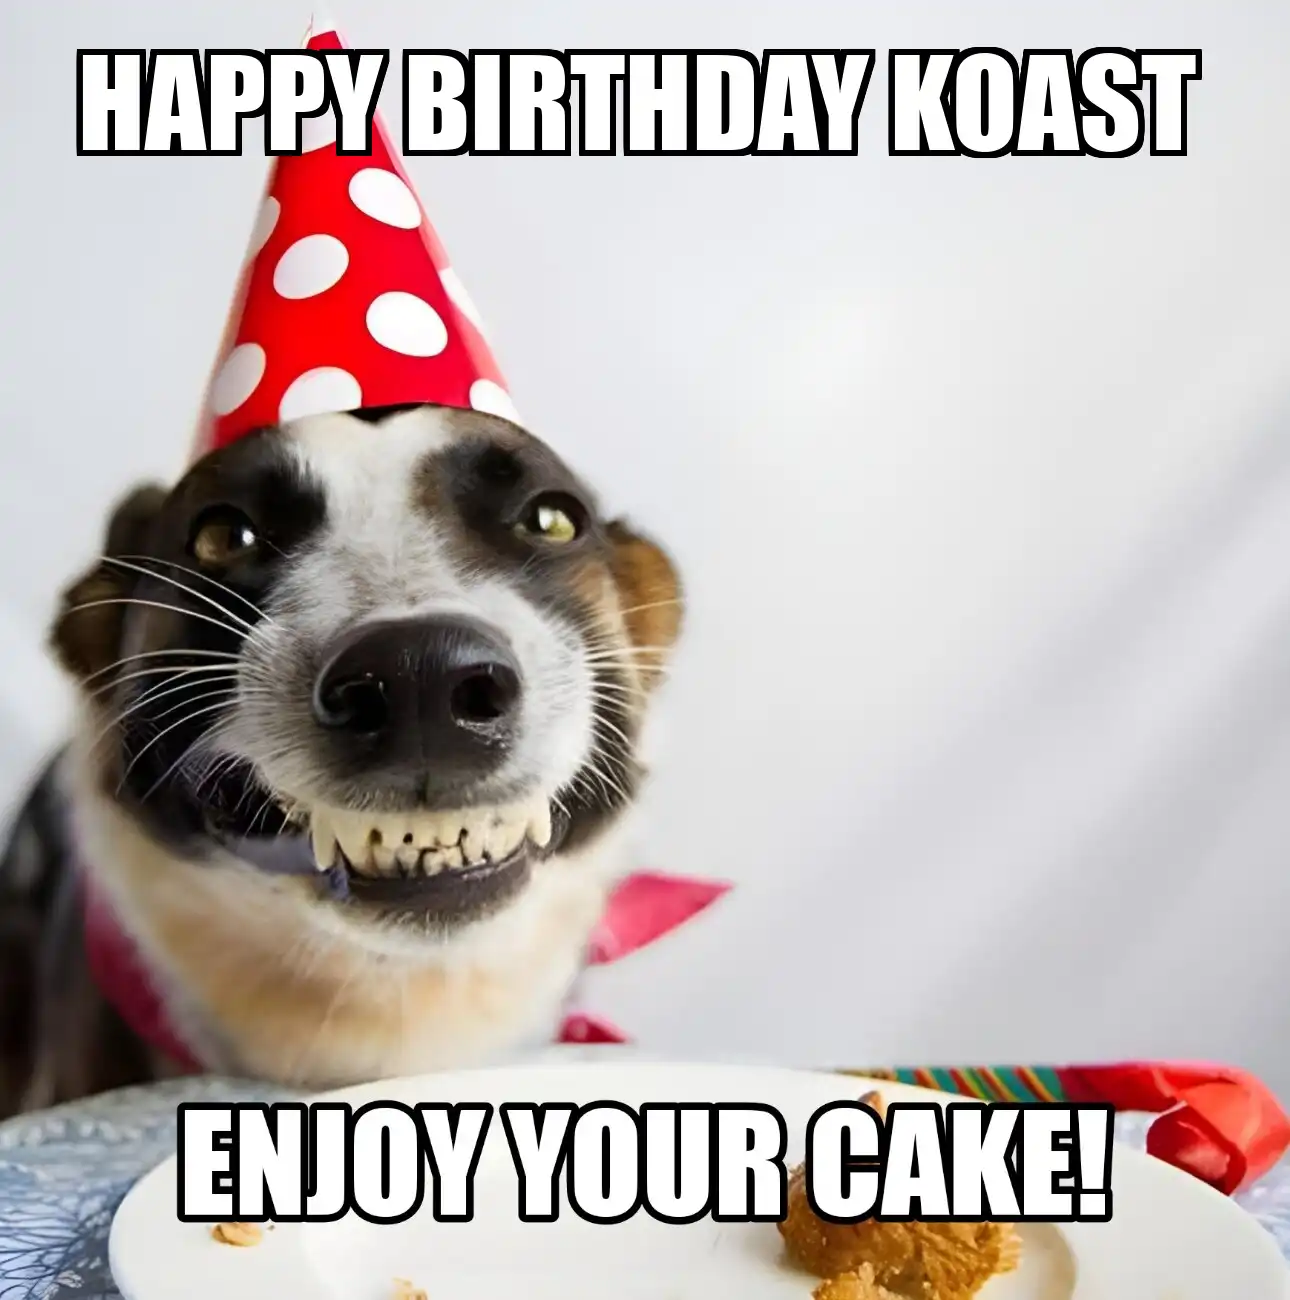 Happy Birthday Koast Enjoy Your Cake Dog Meme